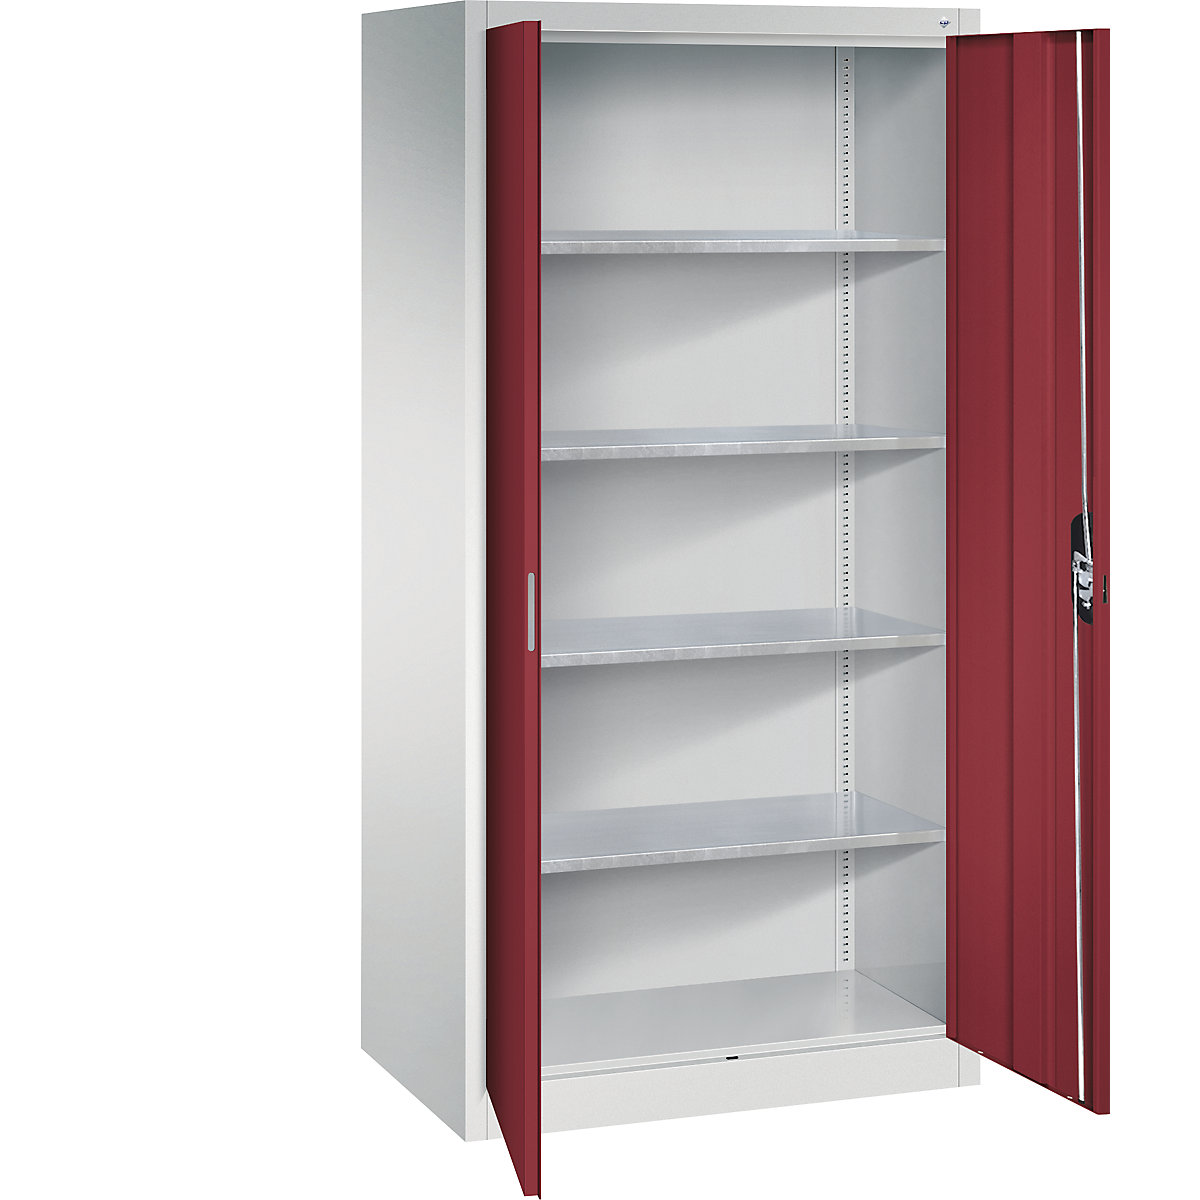 Delavniška omara s krilnimi vrati – C+P, VxŠxG 1950 x 930 x 600 mm, svetlo sive / rubinasto rdeče barve-8